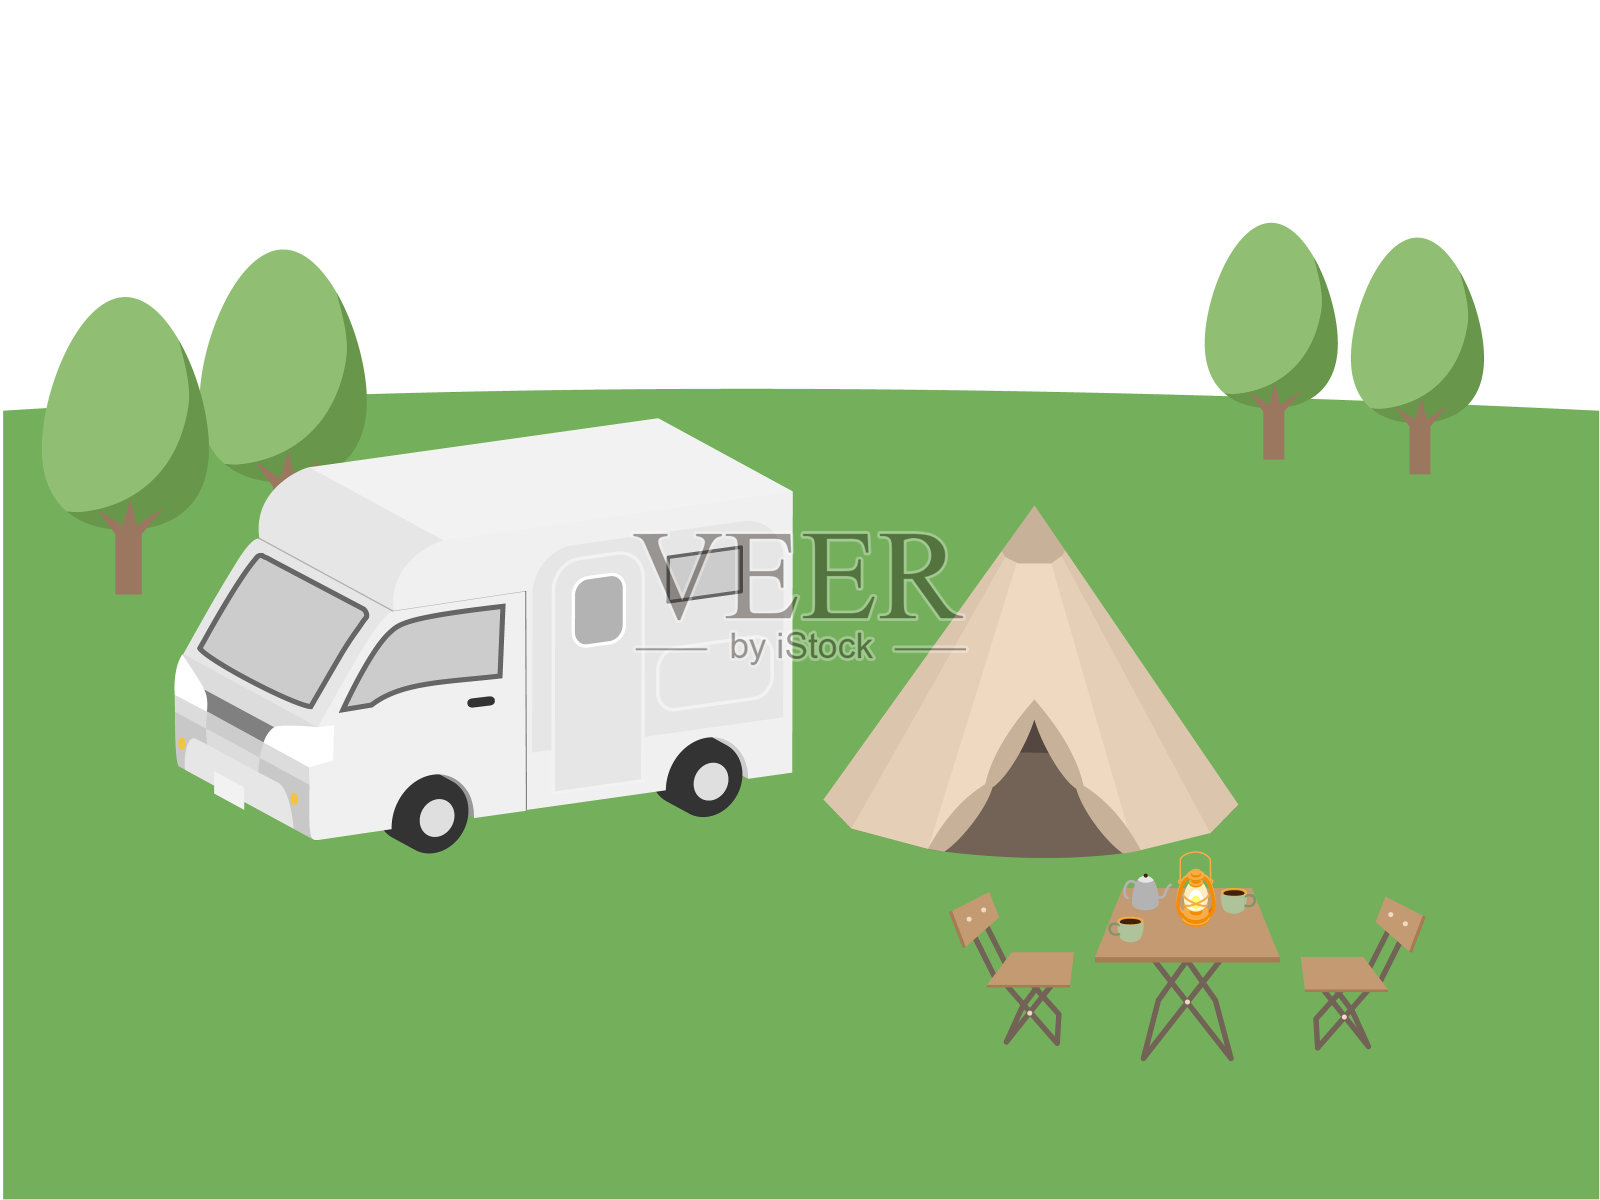 有露营者和帐篷的景观插画图片素材